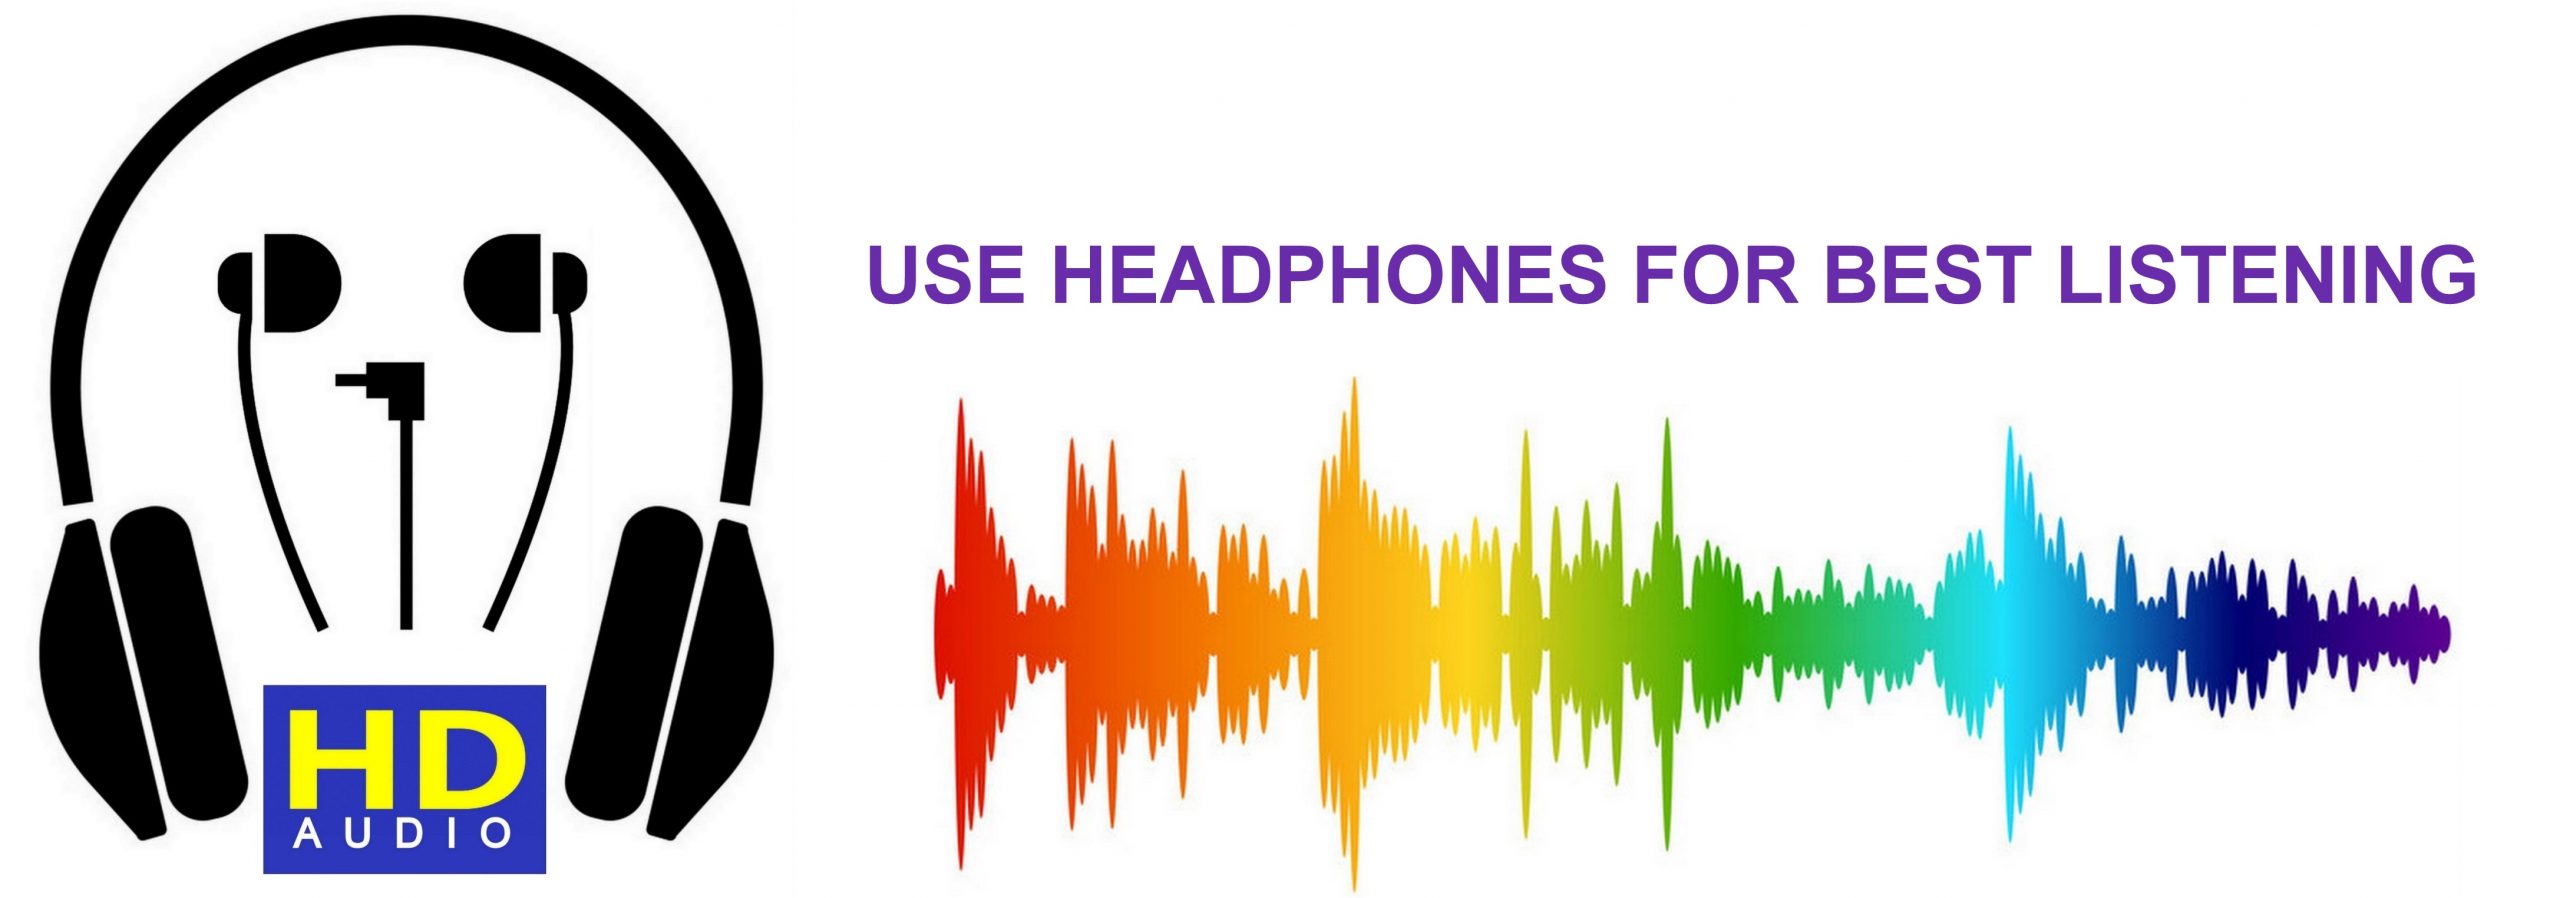 USE-HEADPHONES-FOR-BEST-LISTENING-V2